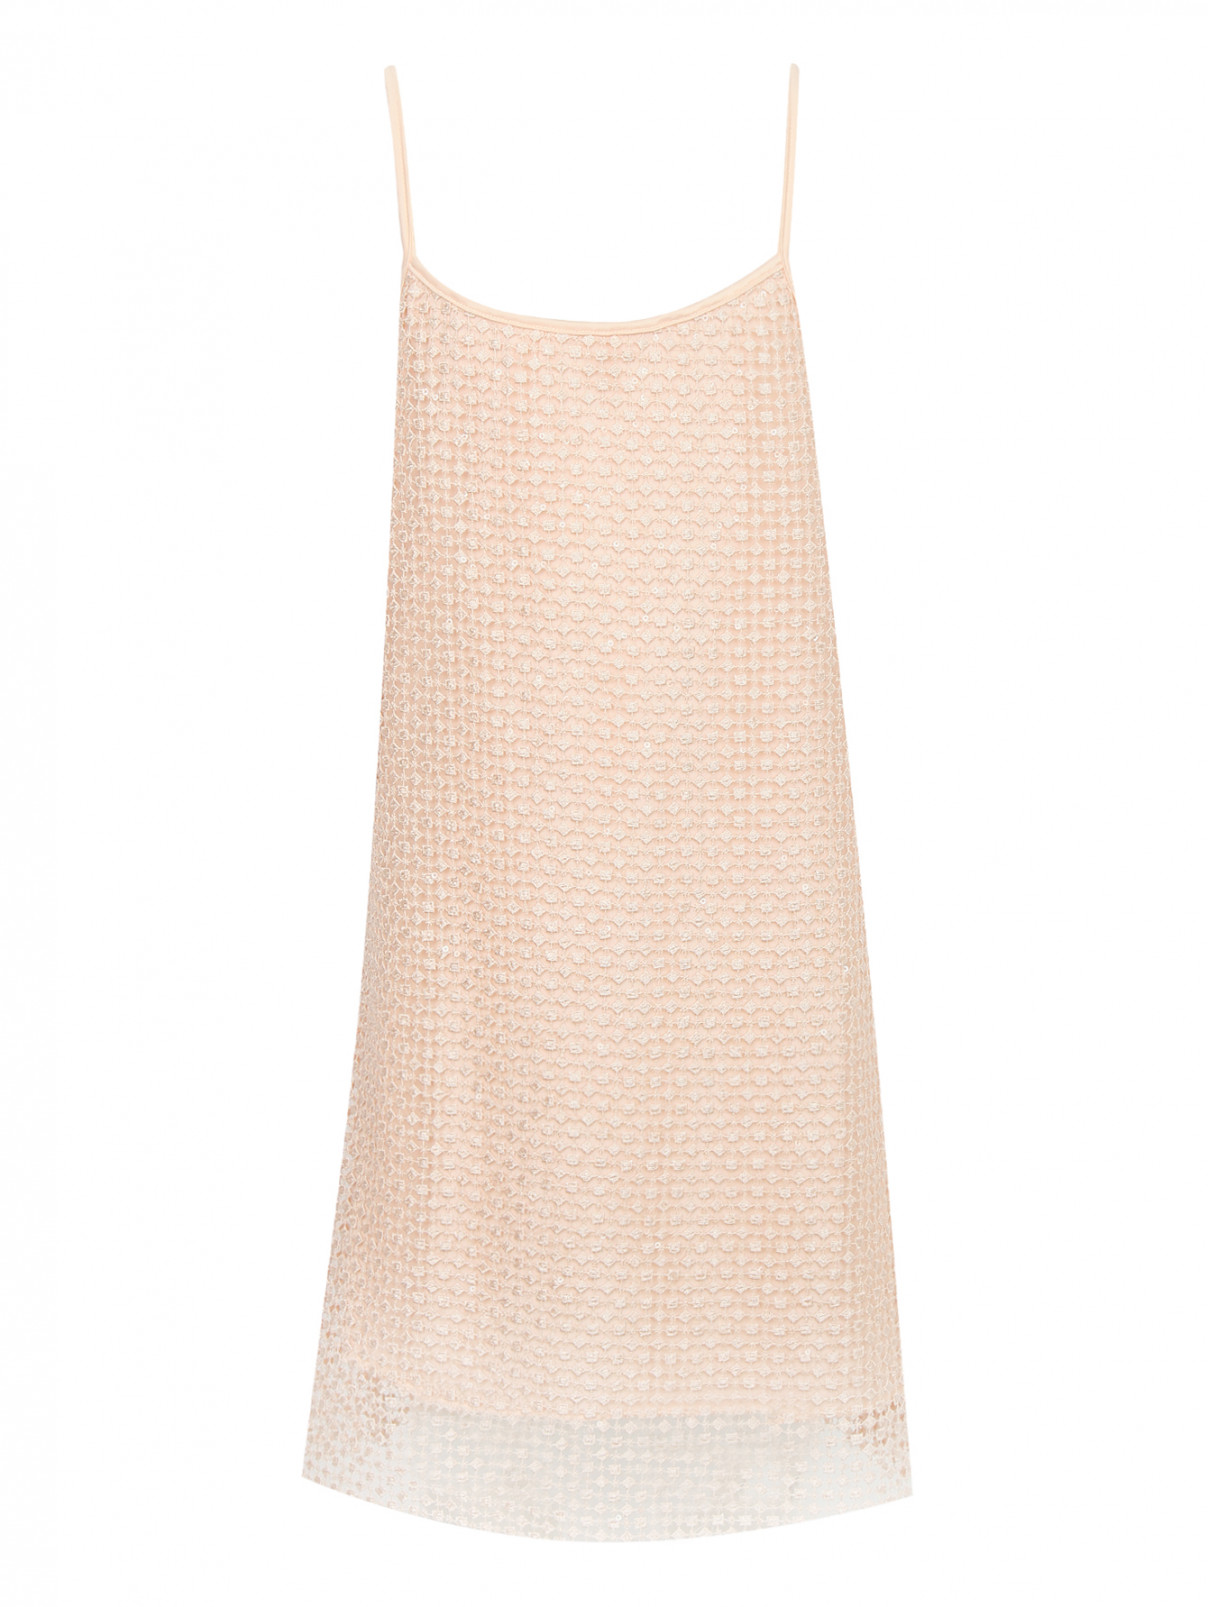 Фактурное платье на тонких бретелях La Perla  –  Общий вид  – Цвет:  Розовый